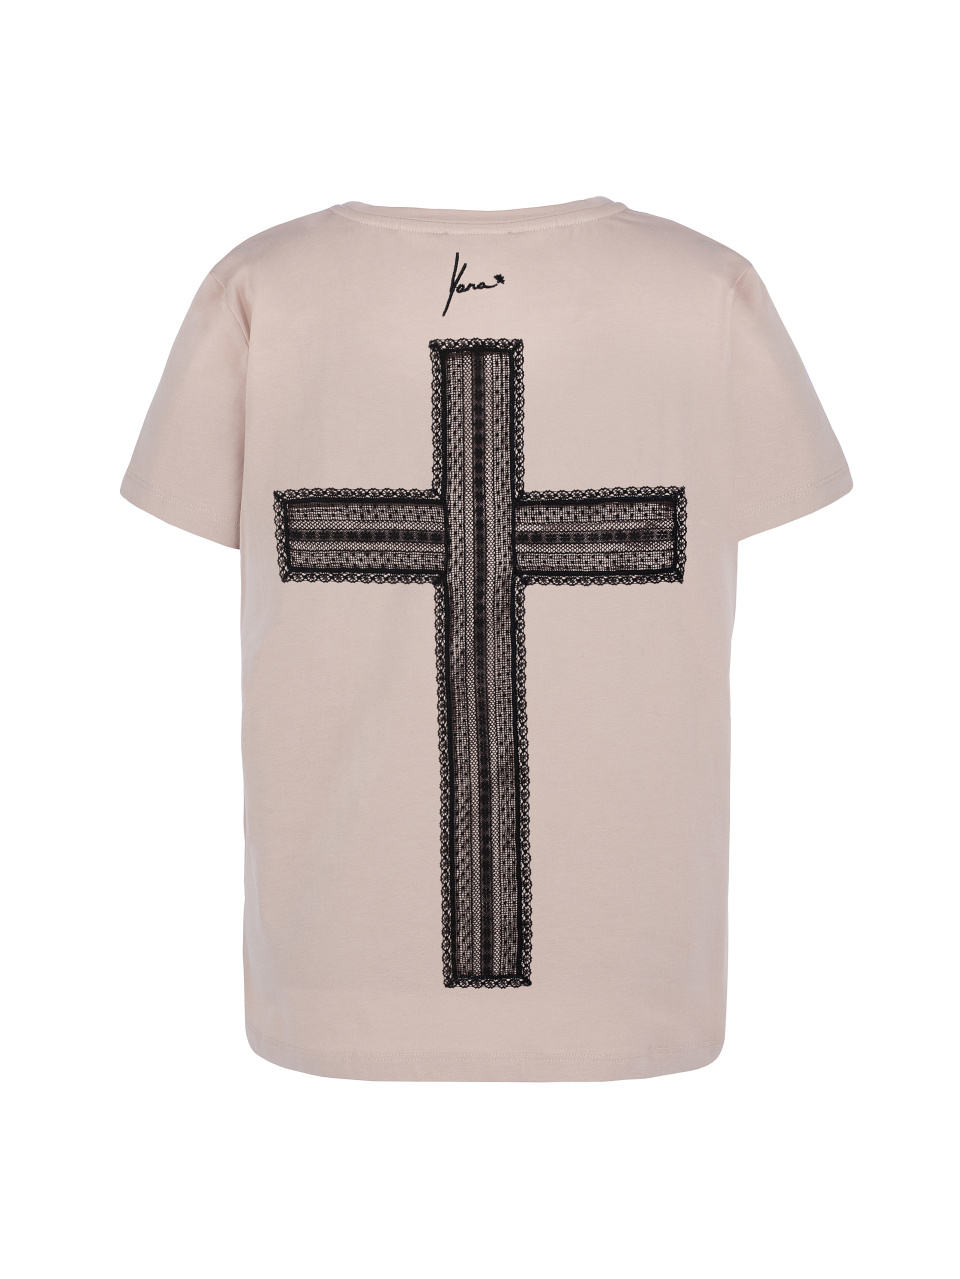 Розовая футболка с кружевным крестом на спине, 1